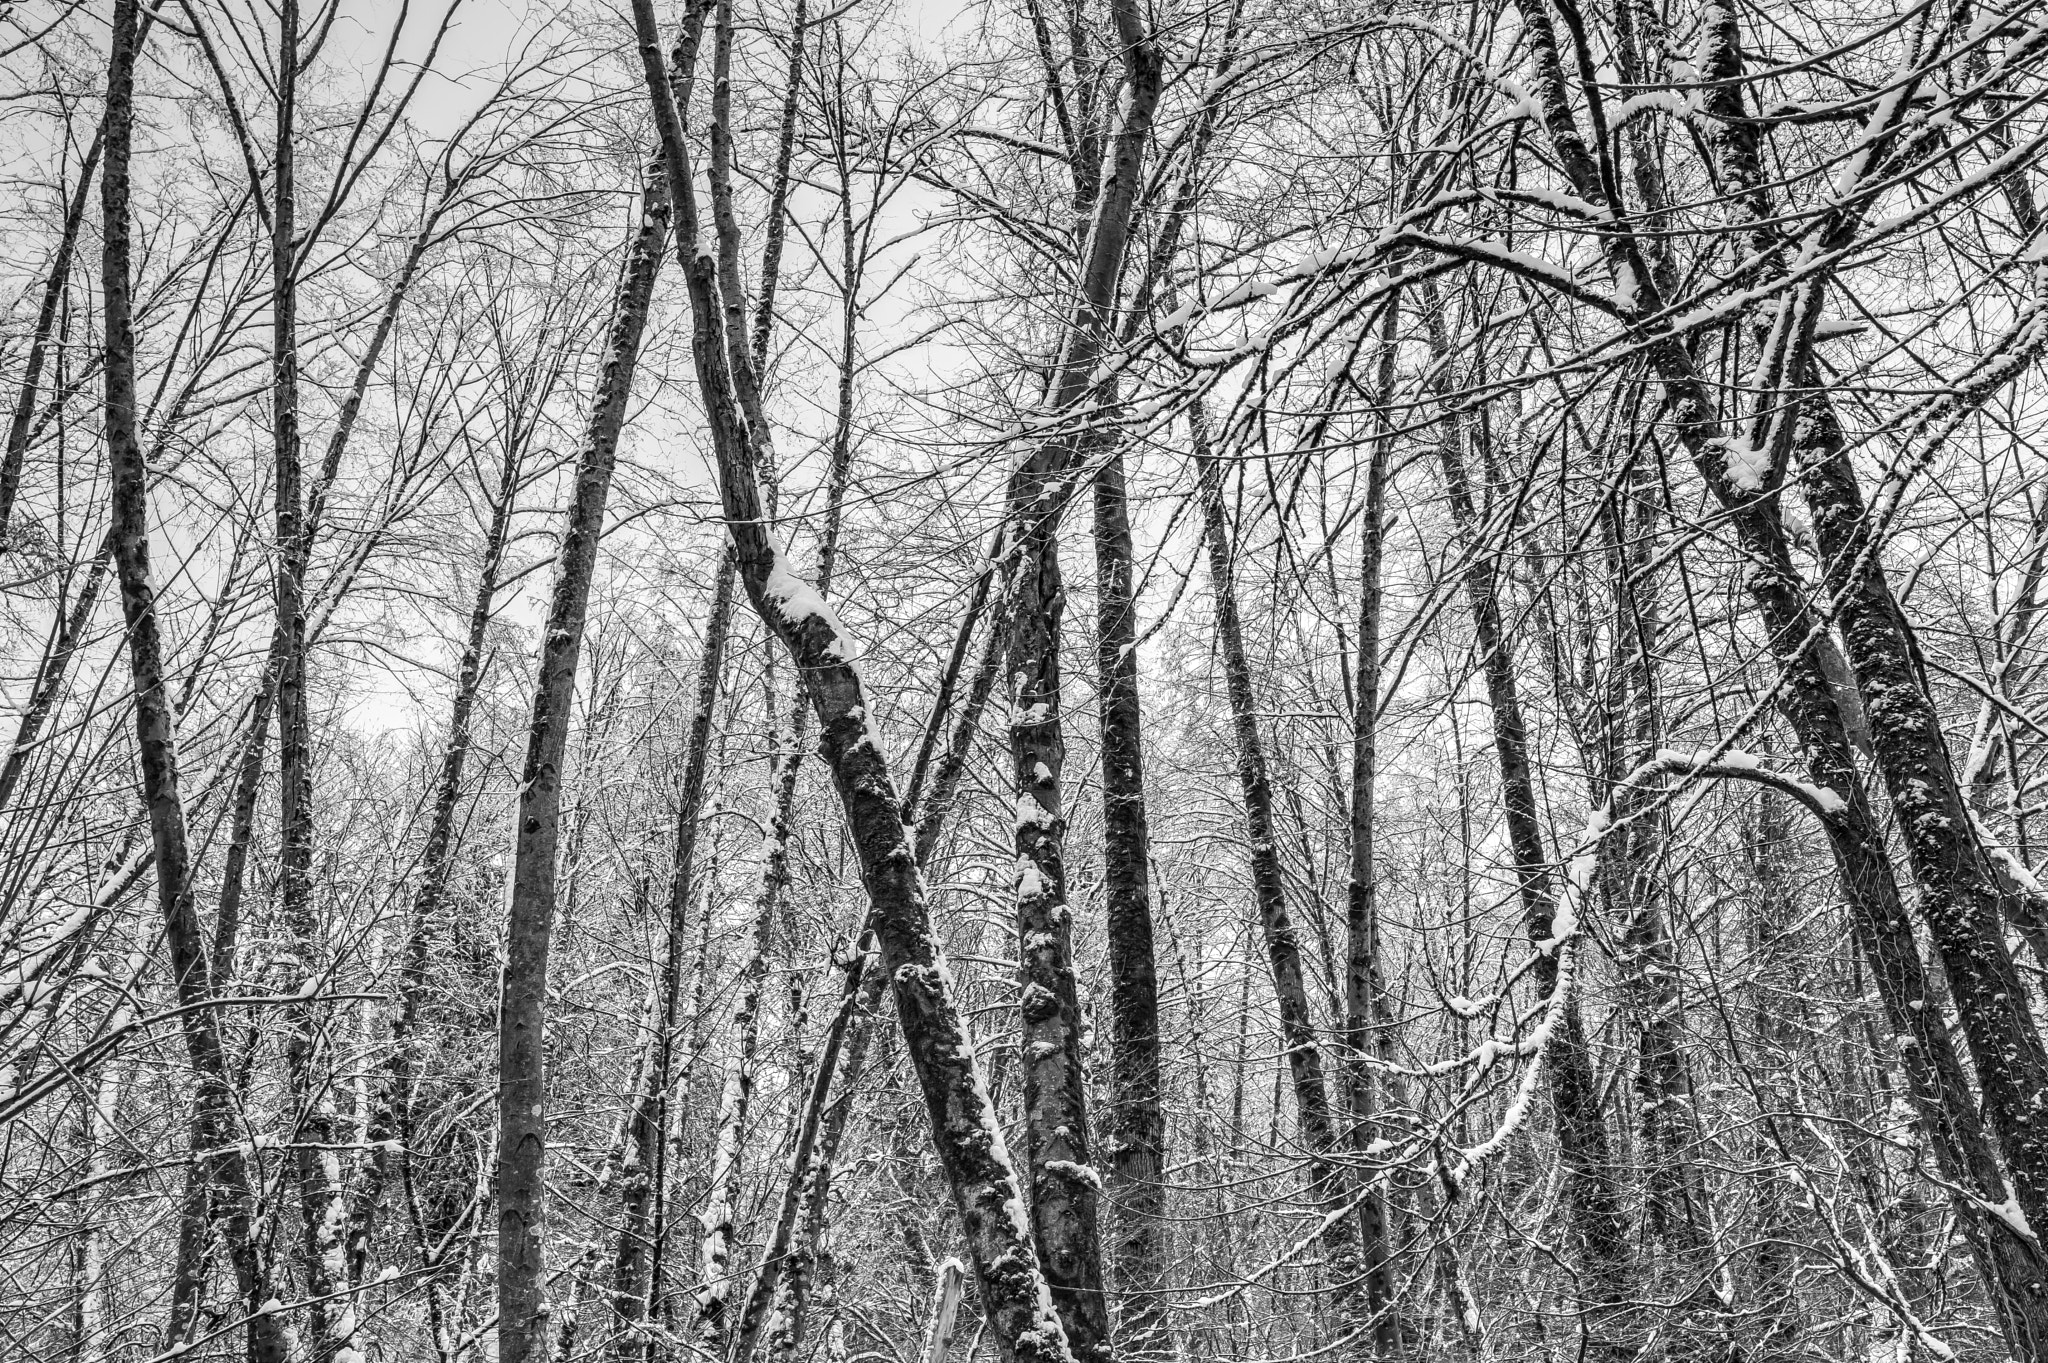 Nikon D810 + Nikon AF-S Nikkor 18-35mm F3.5-4.5G ED sample photo. Wandering winter woods photography